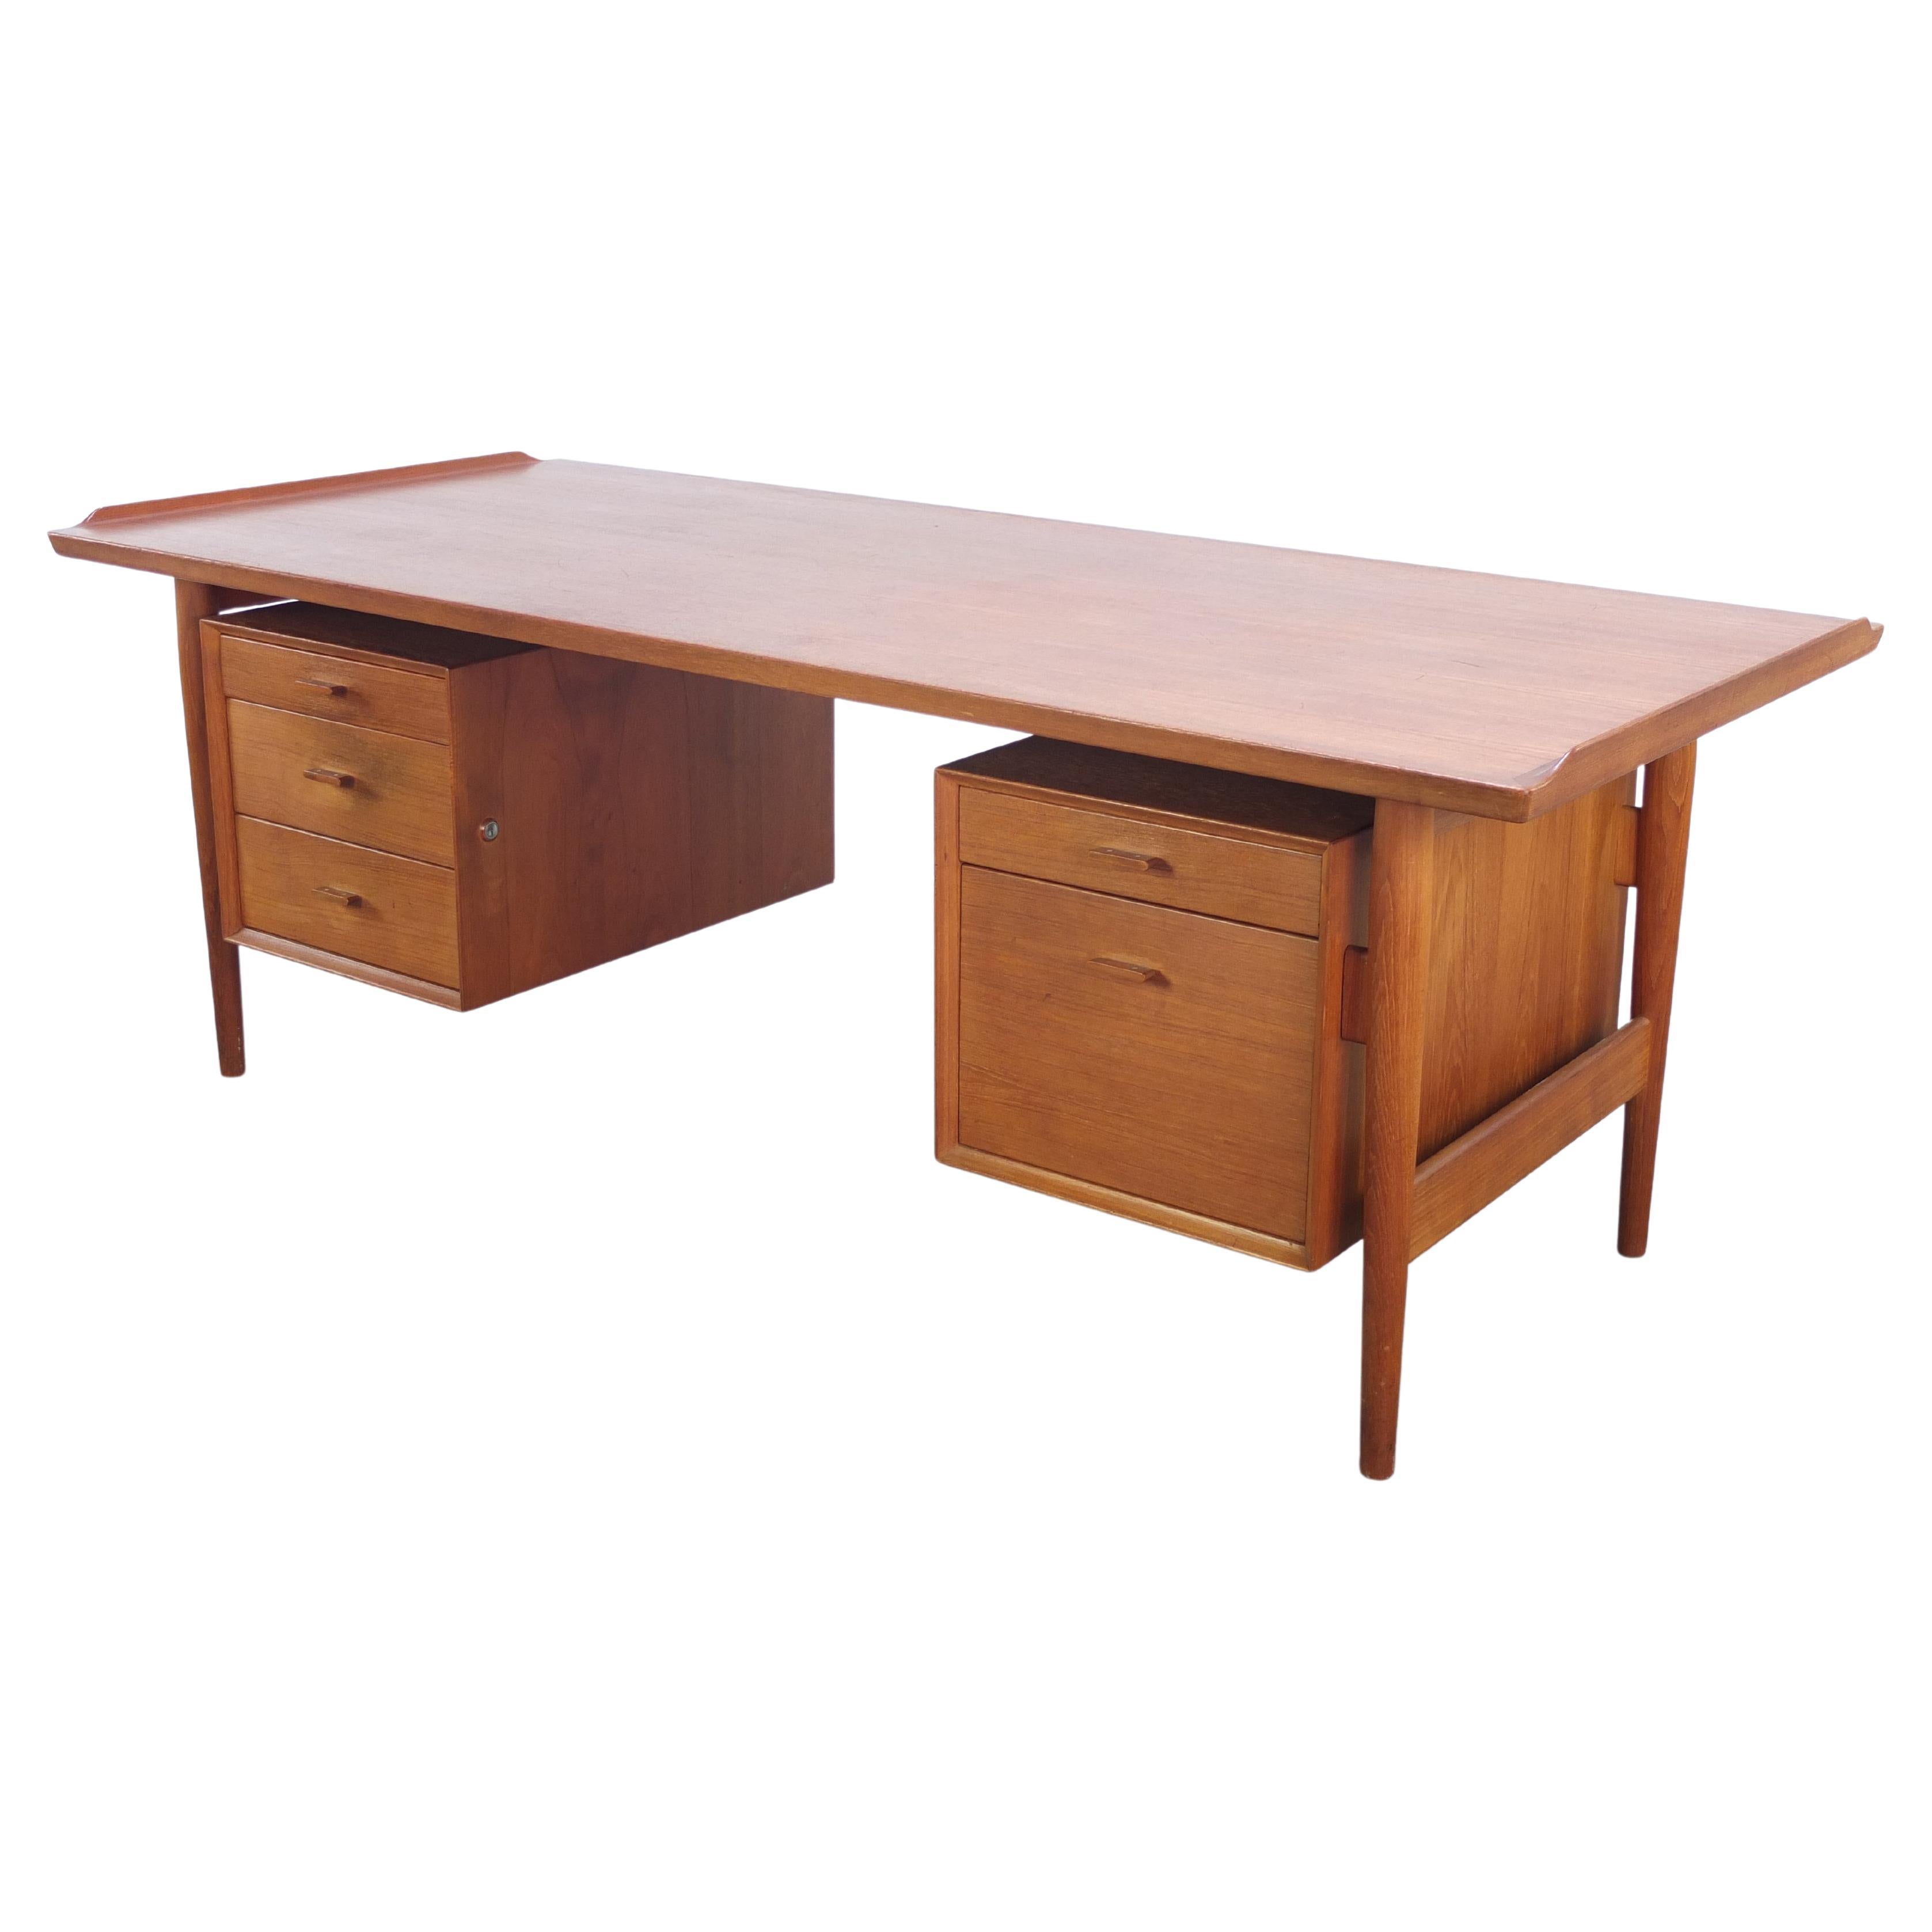 Large 'Model 207' Executive Teak Desk by Arne Vodder for Sibast Furniture, 1950s